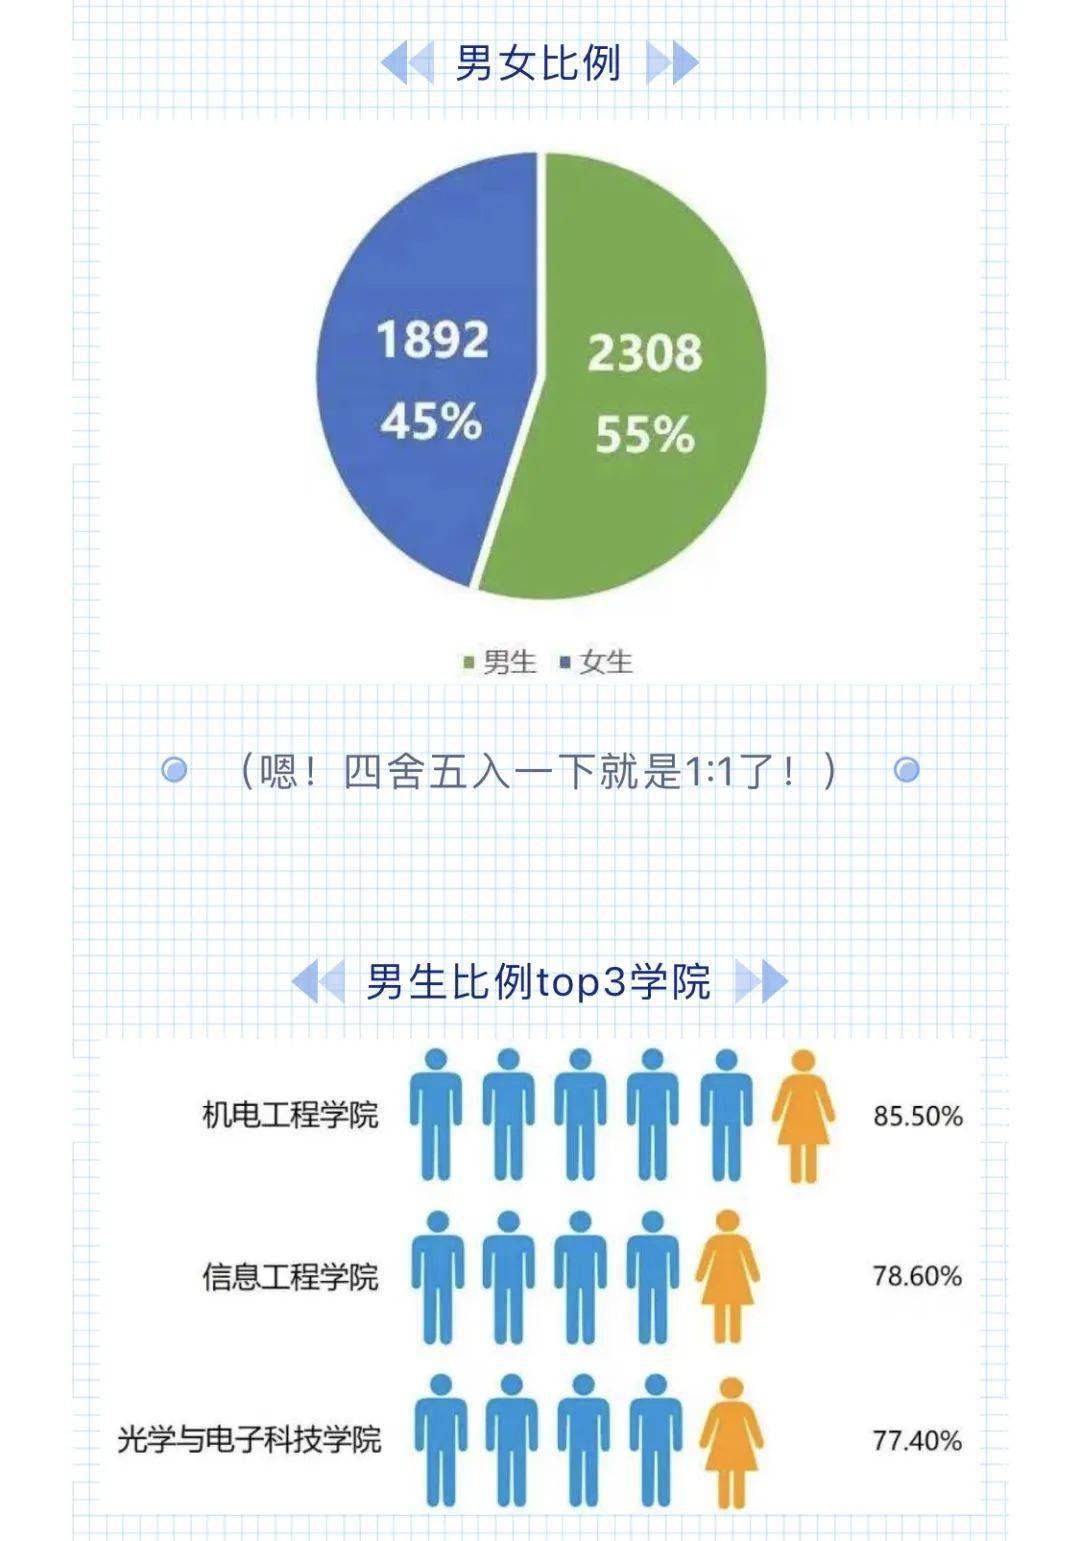 2020年,中国计量大学录取本科新生4200人,新生男女比例几乎接近1:1